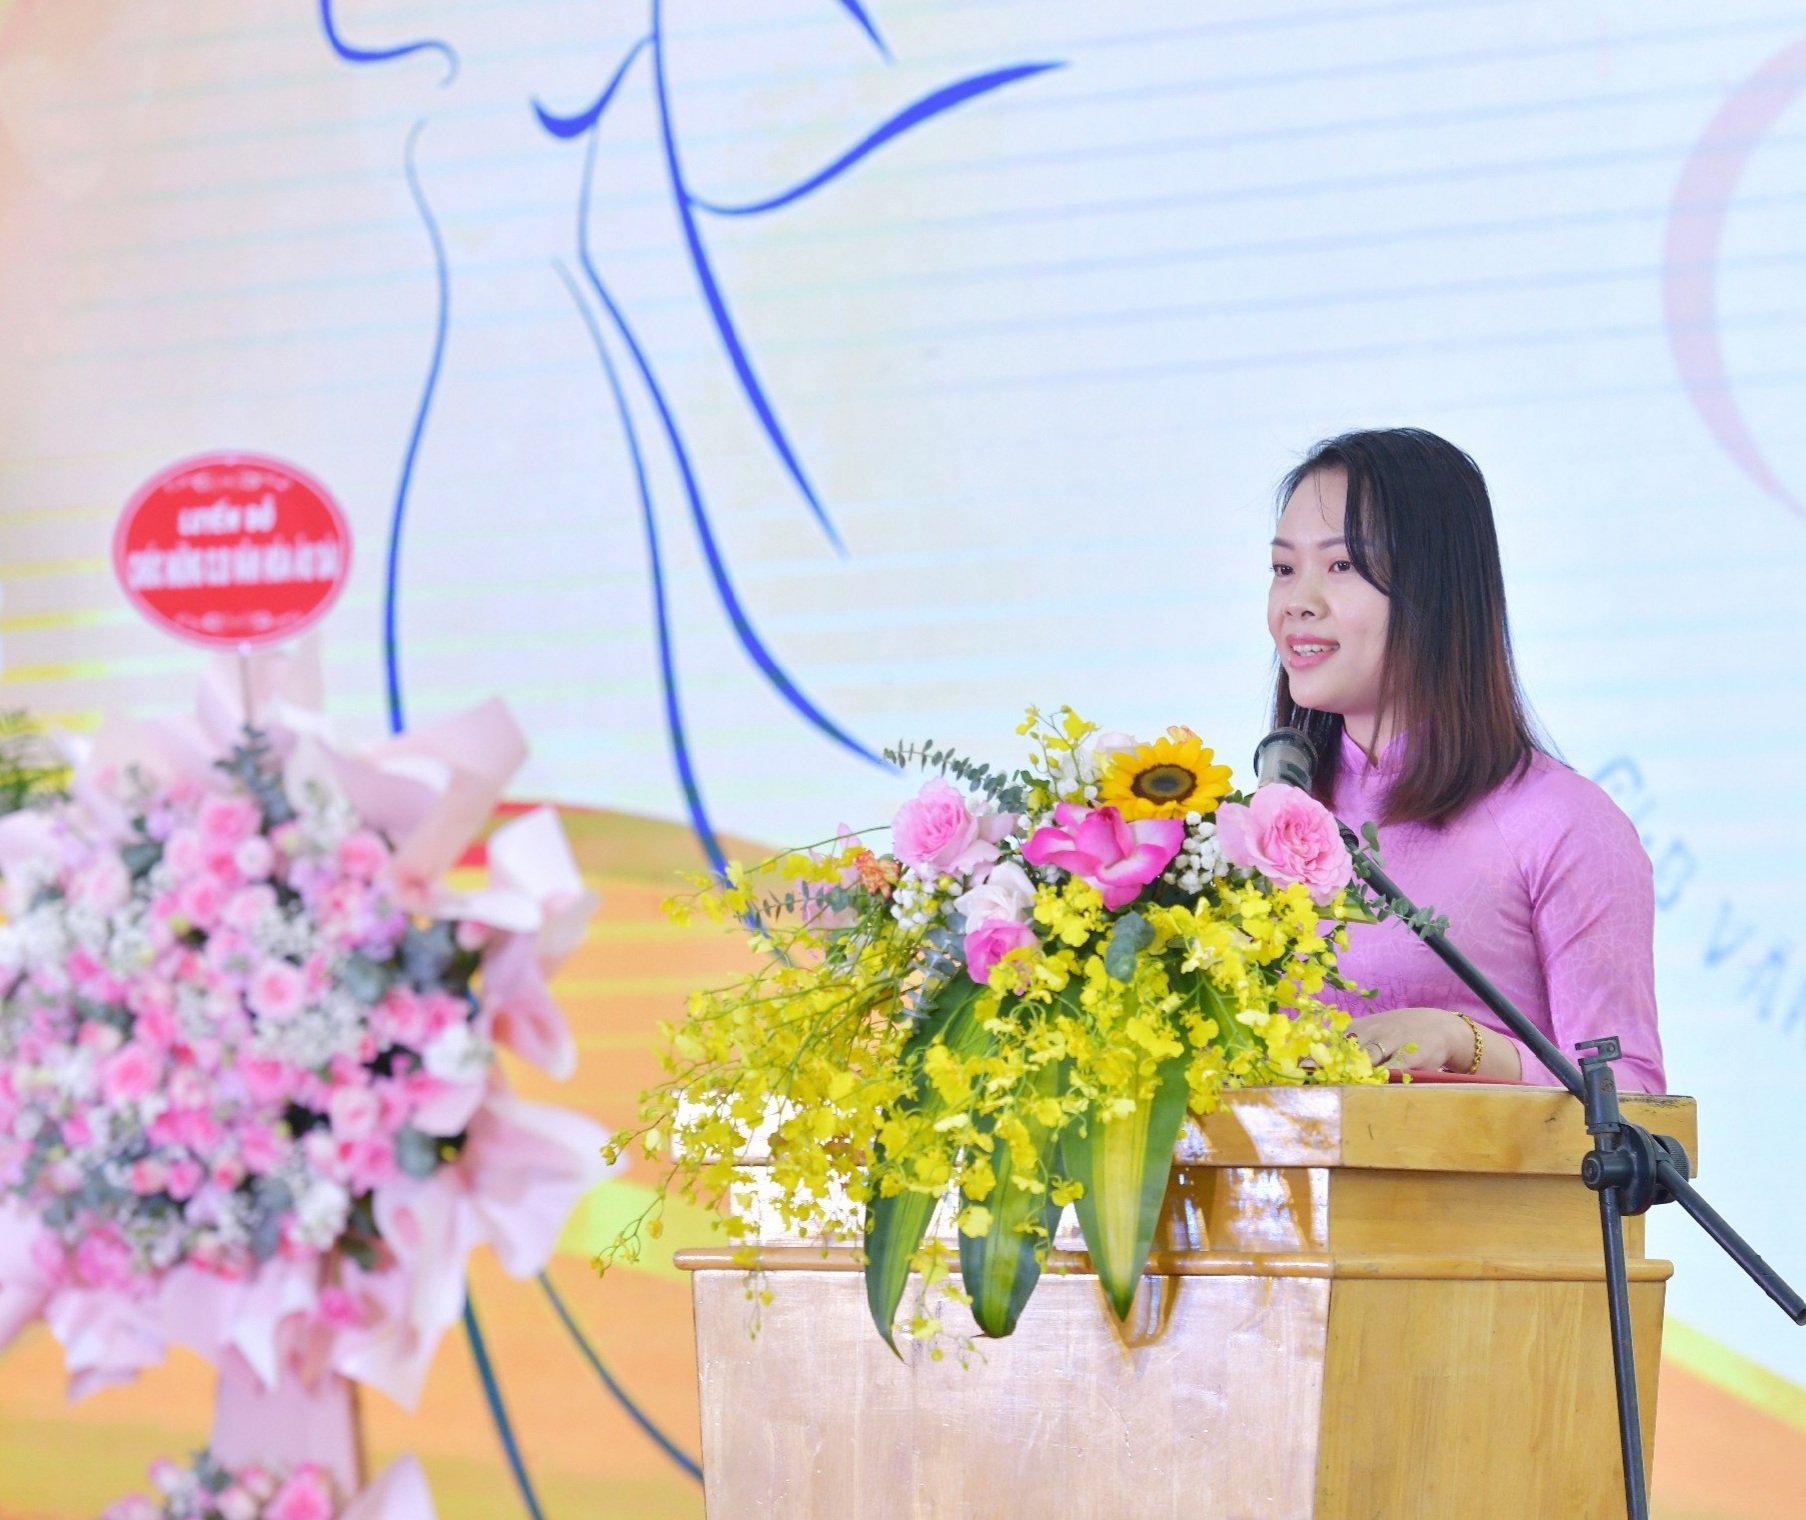 Bà Phạm Thị Vân - Phó Trưởng đại diện Miền Bắc Tổ chức Kỷ lục Việt Nam đại diện công bố quyết định xác lập Kỷ lục - Ảnh: VietKings